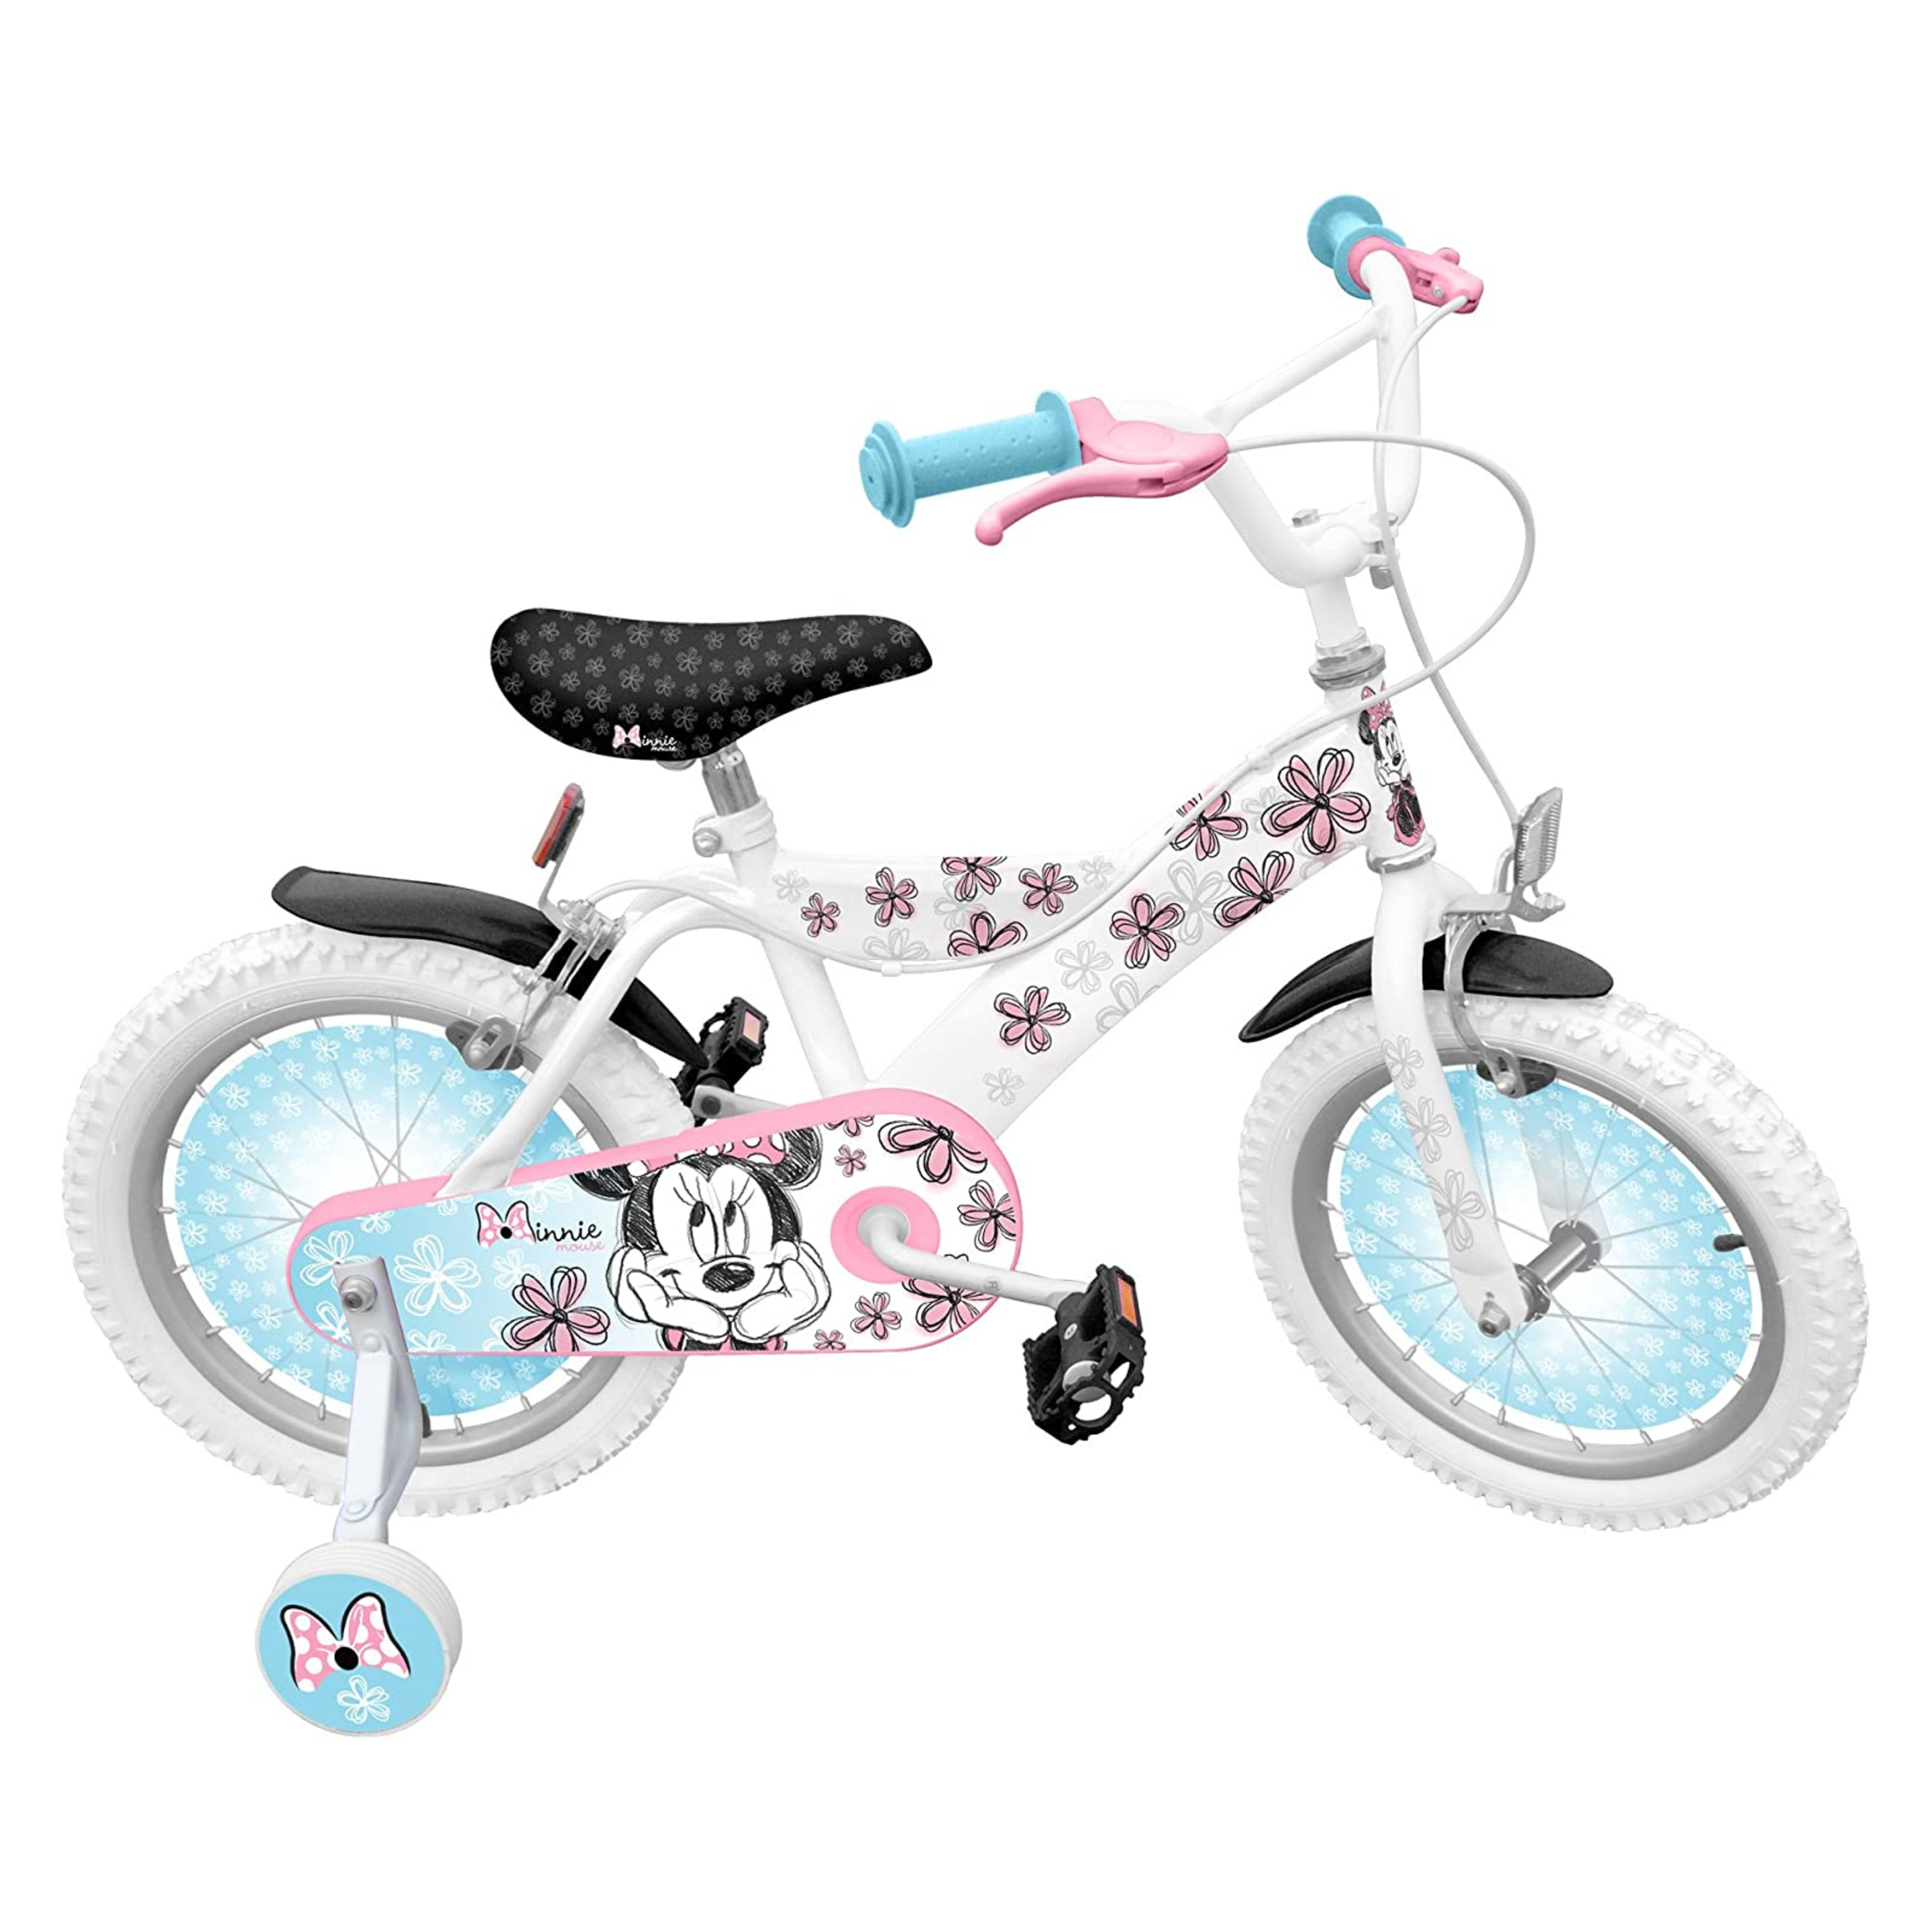 Bicicleta Criança Minne Mouse 16 Polegadas 5-7 Anos